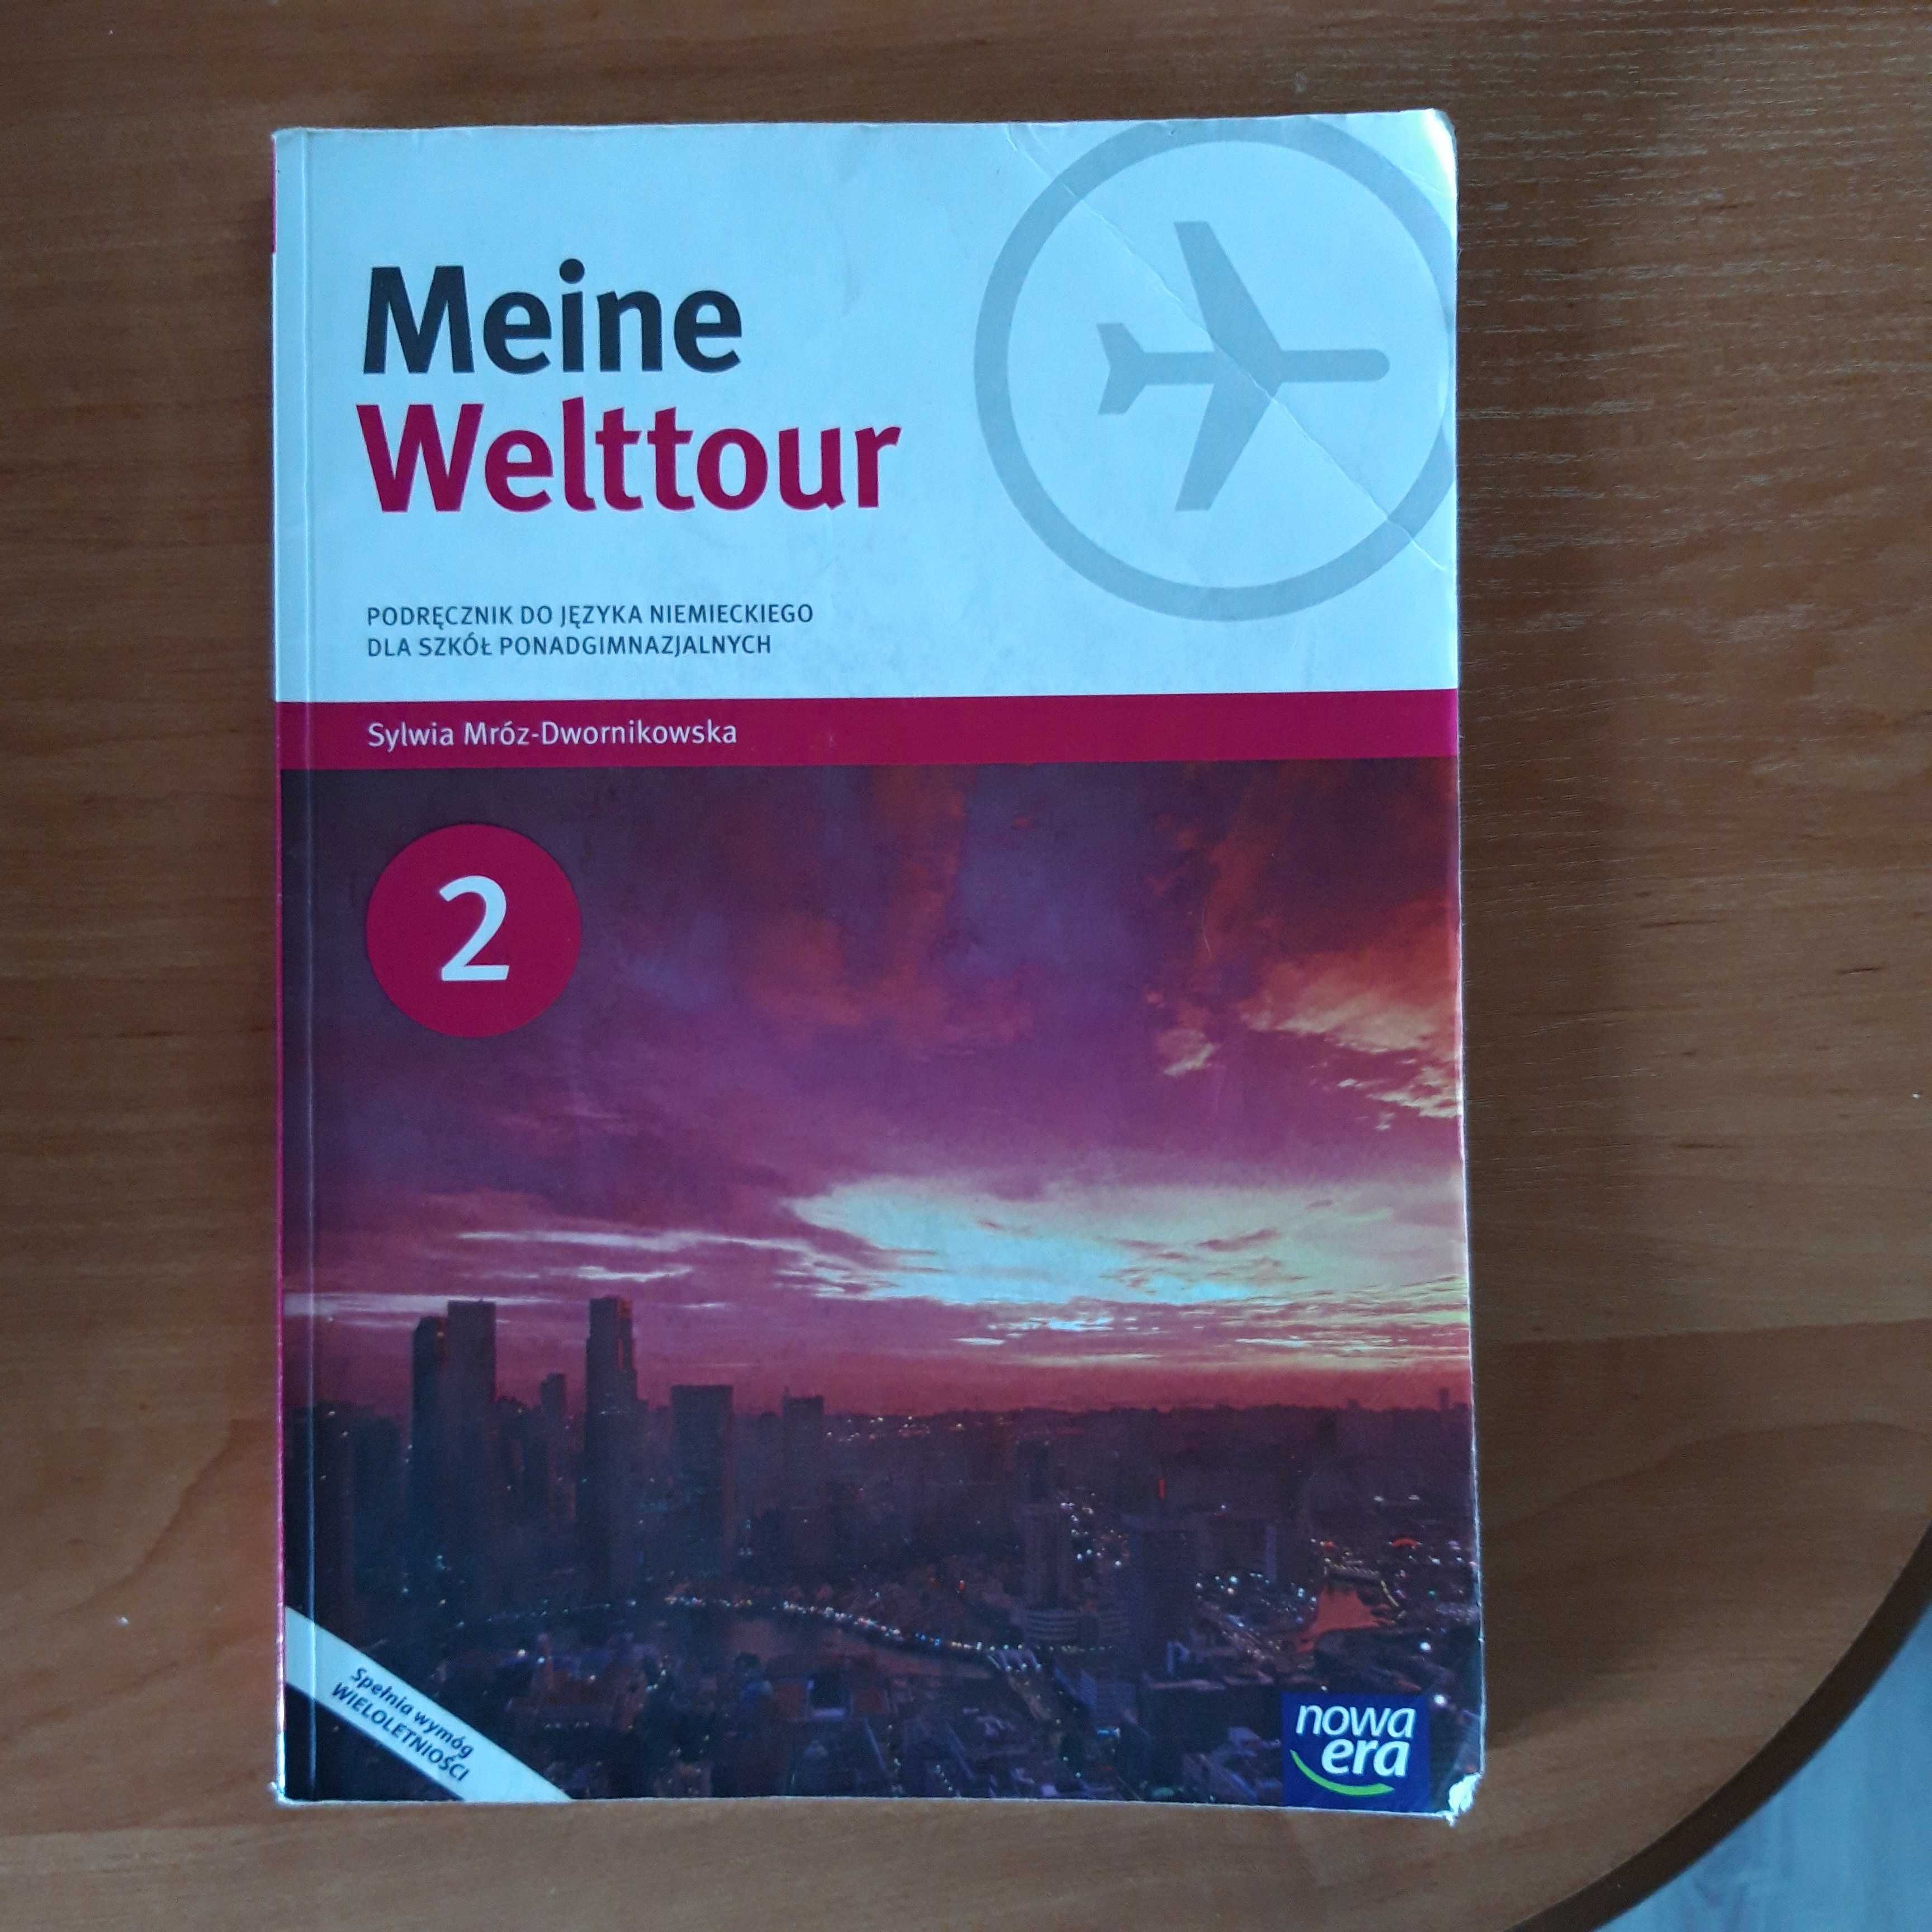 Podręcznik Meine Welttour 2 dla szkół ponadgimnazjalnych